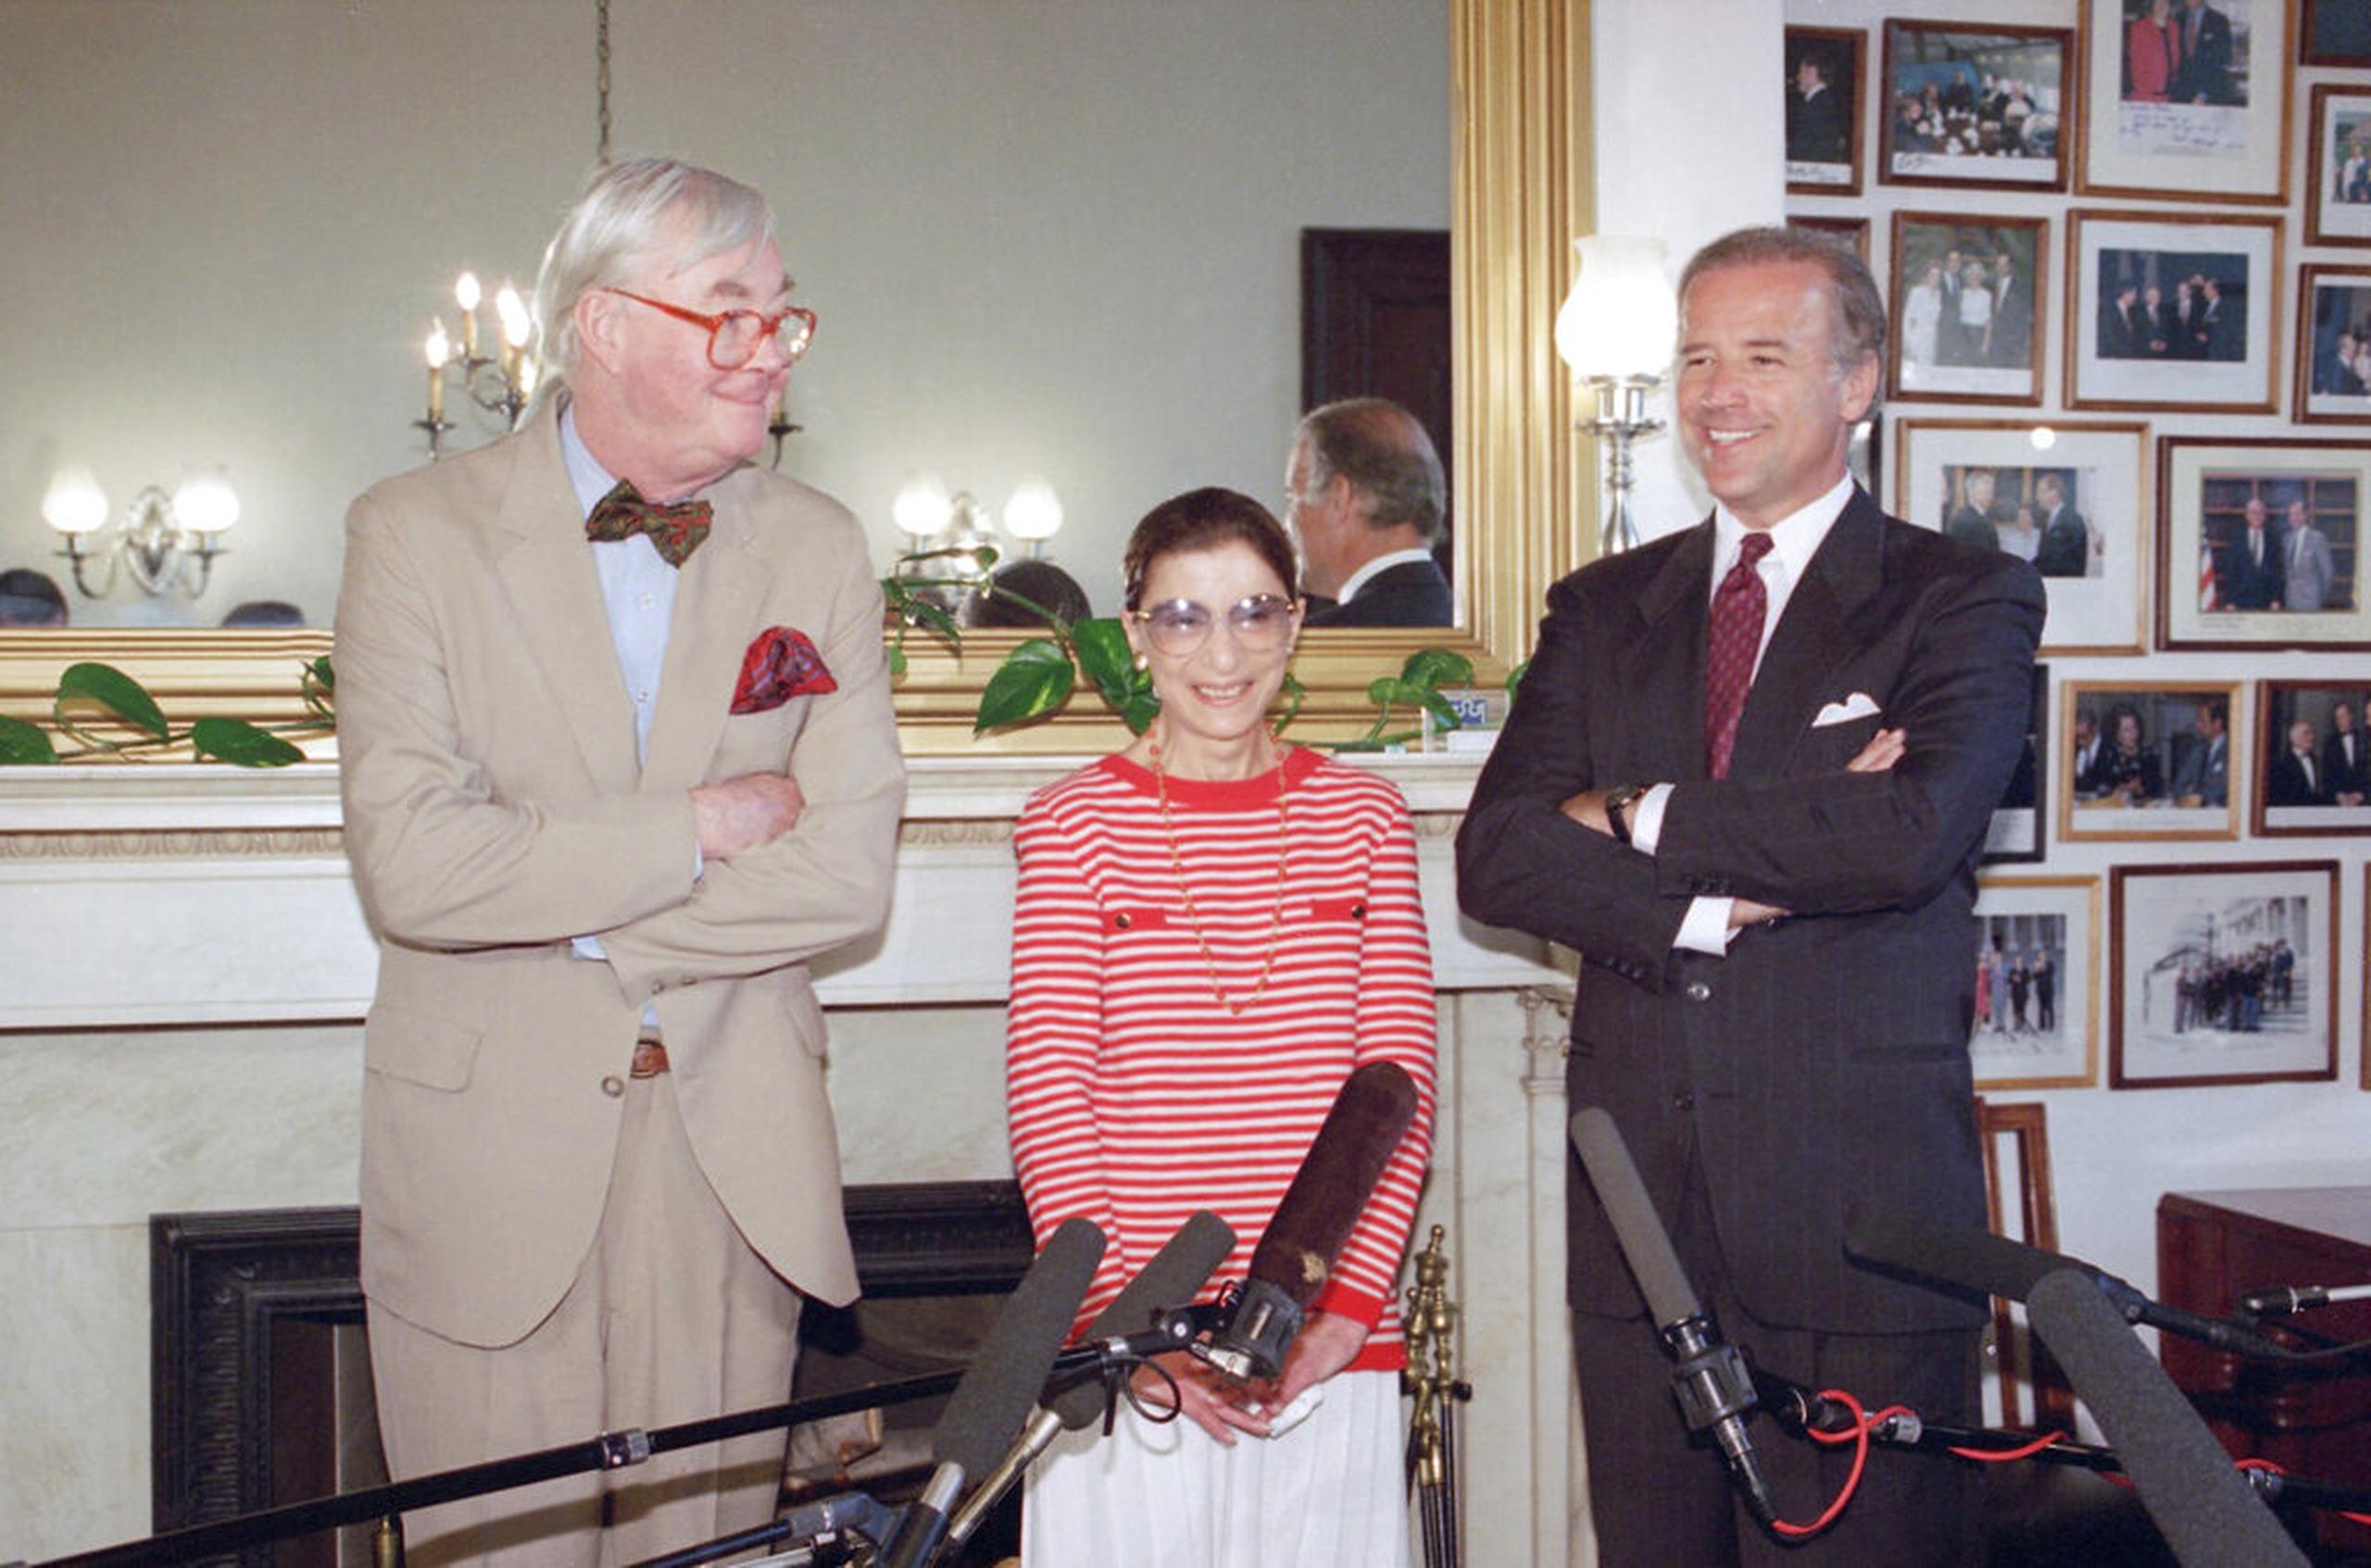 La jueza Ruth Bader Ginsburg posa con los entonces senadores demócratas Daniel Patrick Moynihan y Joe Biden el 15 de junio de 1993, en el Capitolio de los Estados Unidos.